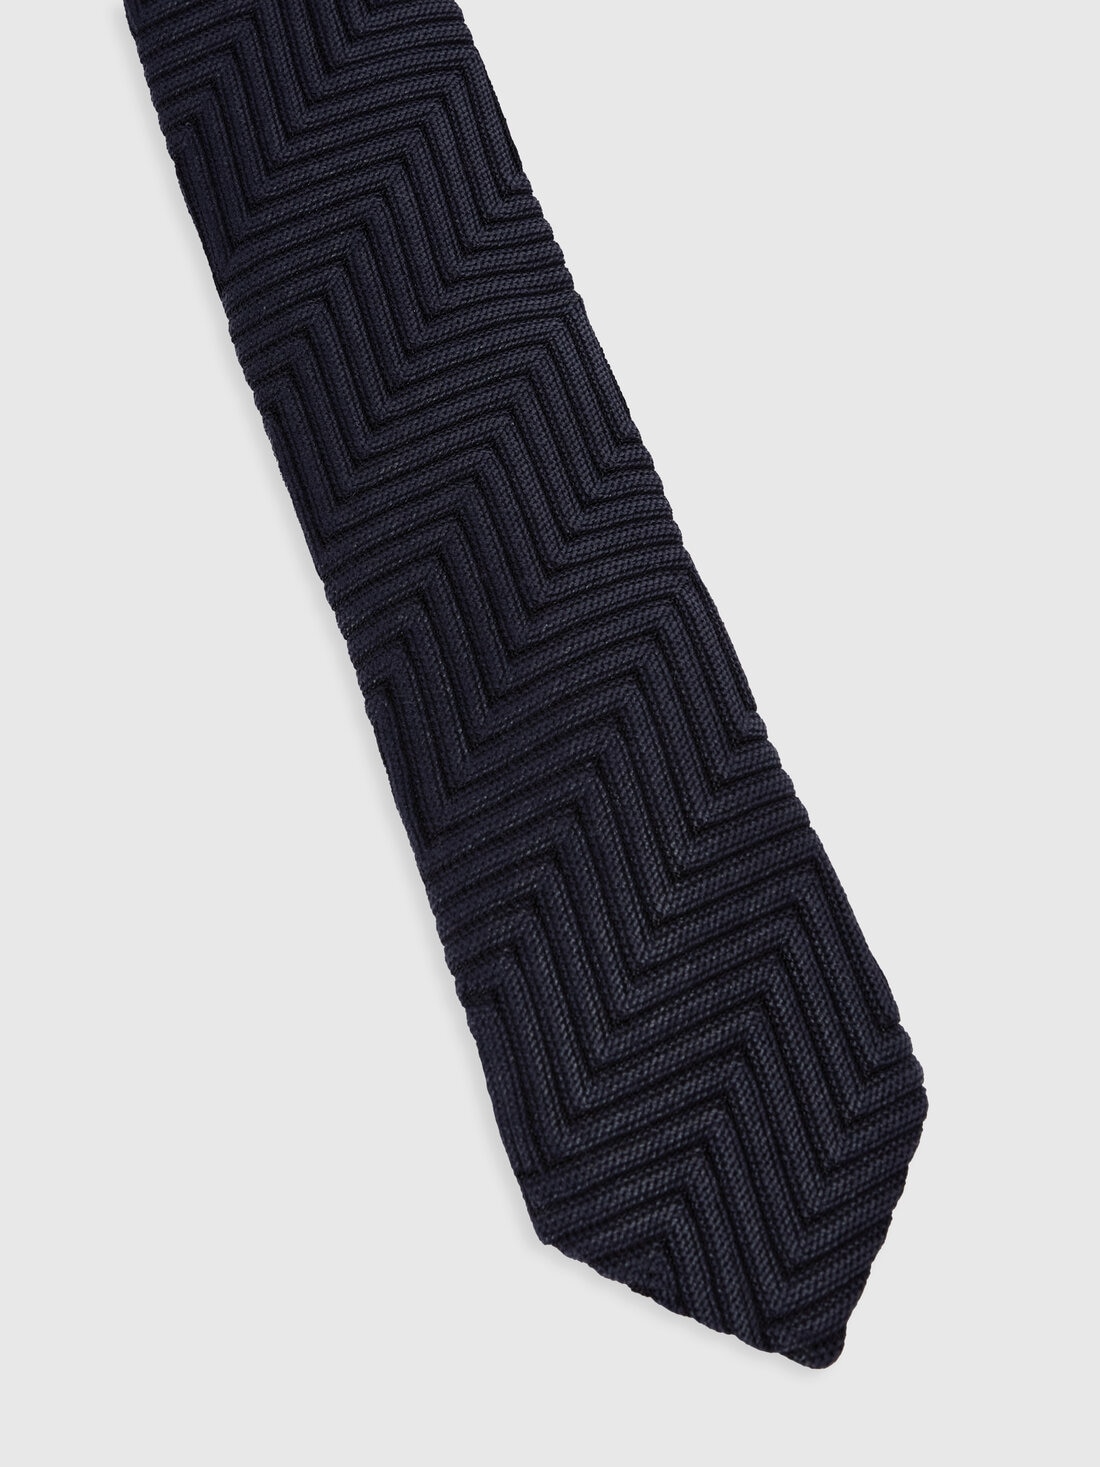 Cravatta in cotone e viscosa chevron, Multicolore  - 8053147141824 - 1